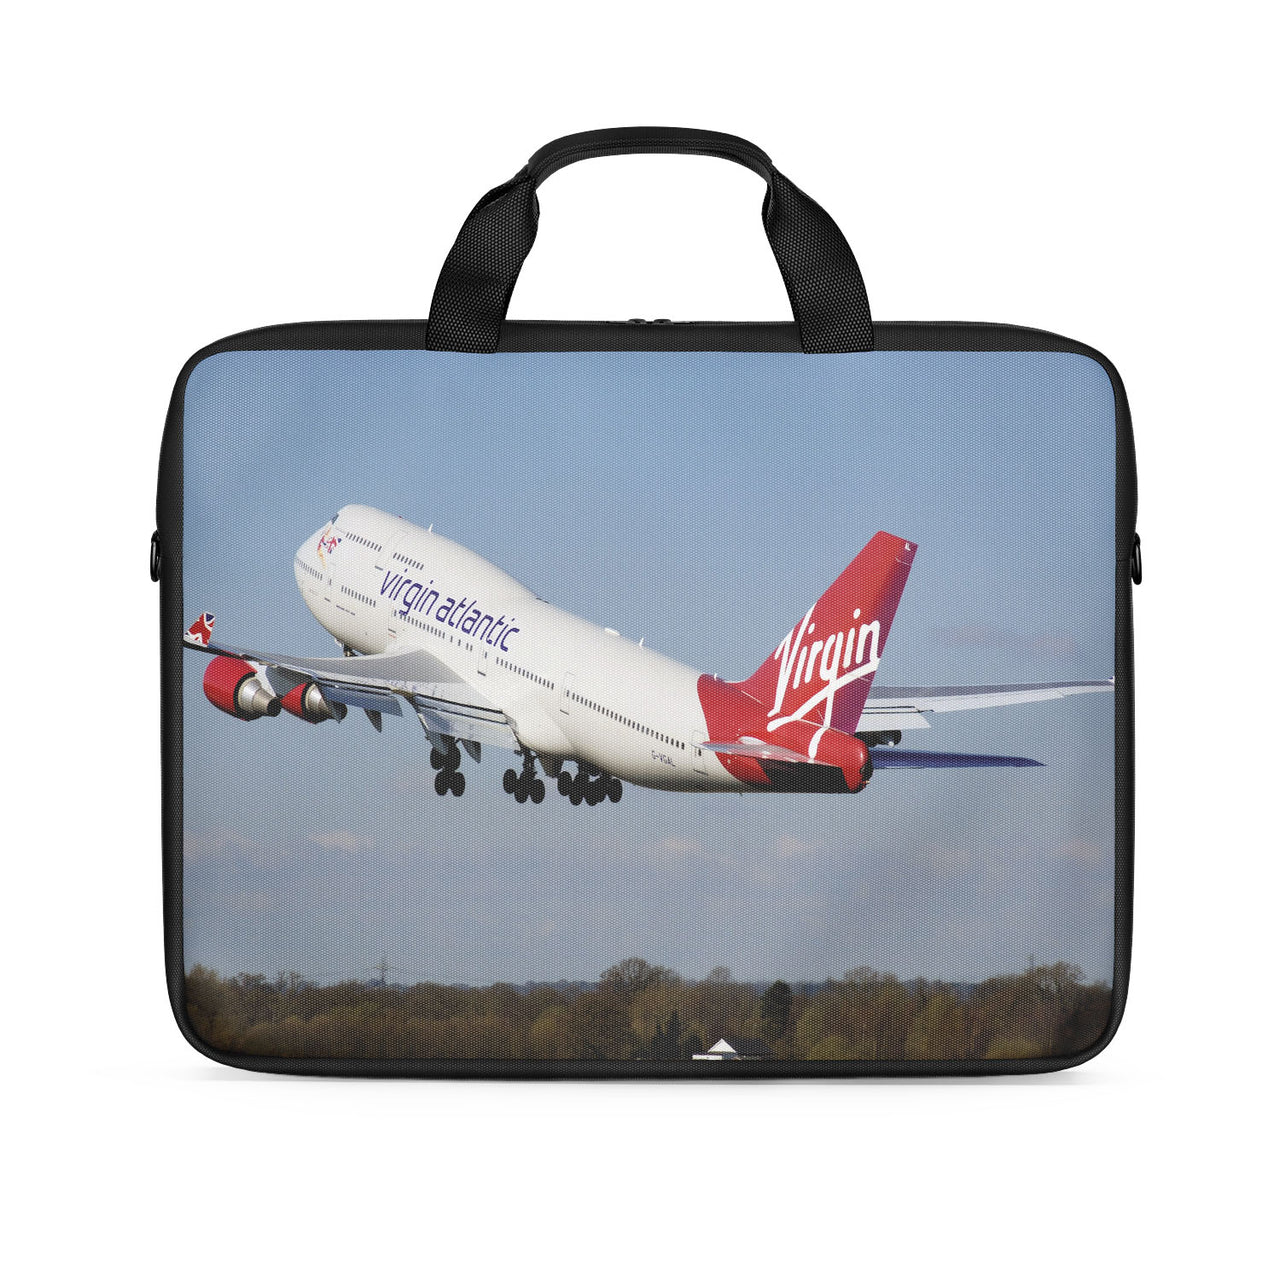 Virgin Atlantic Boeing 747 Designed Laptop & Tablet Bags